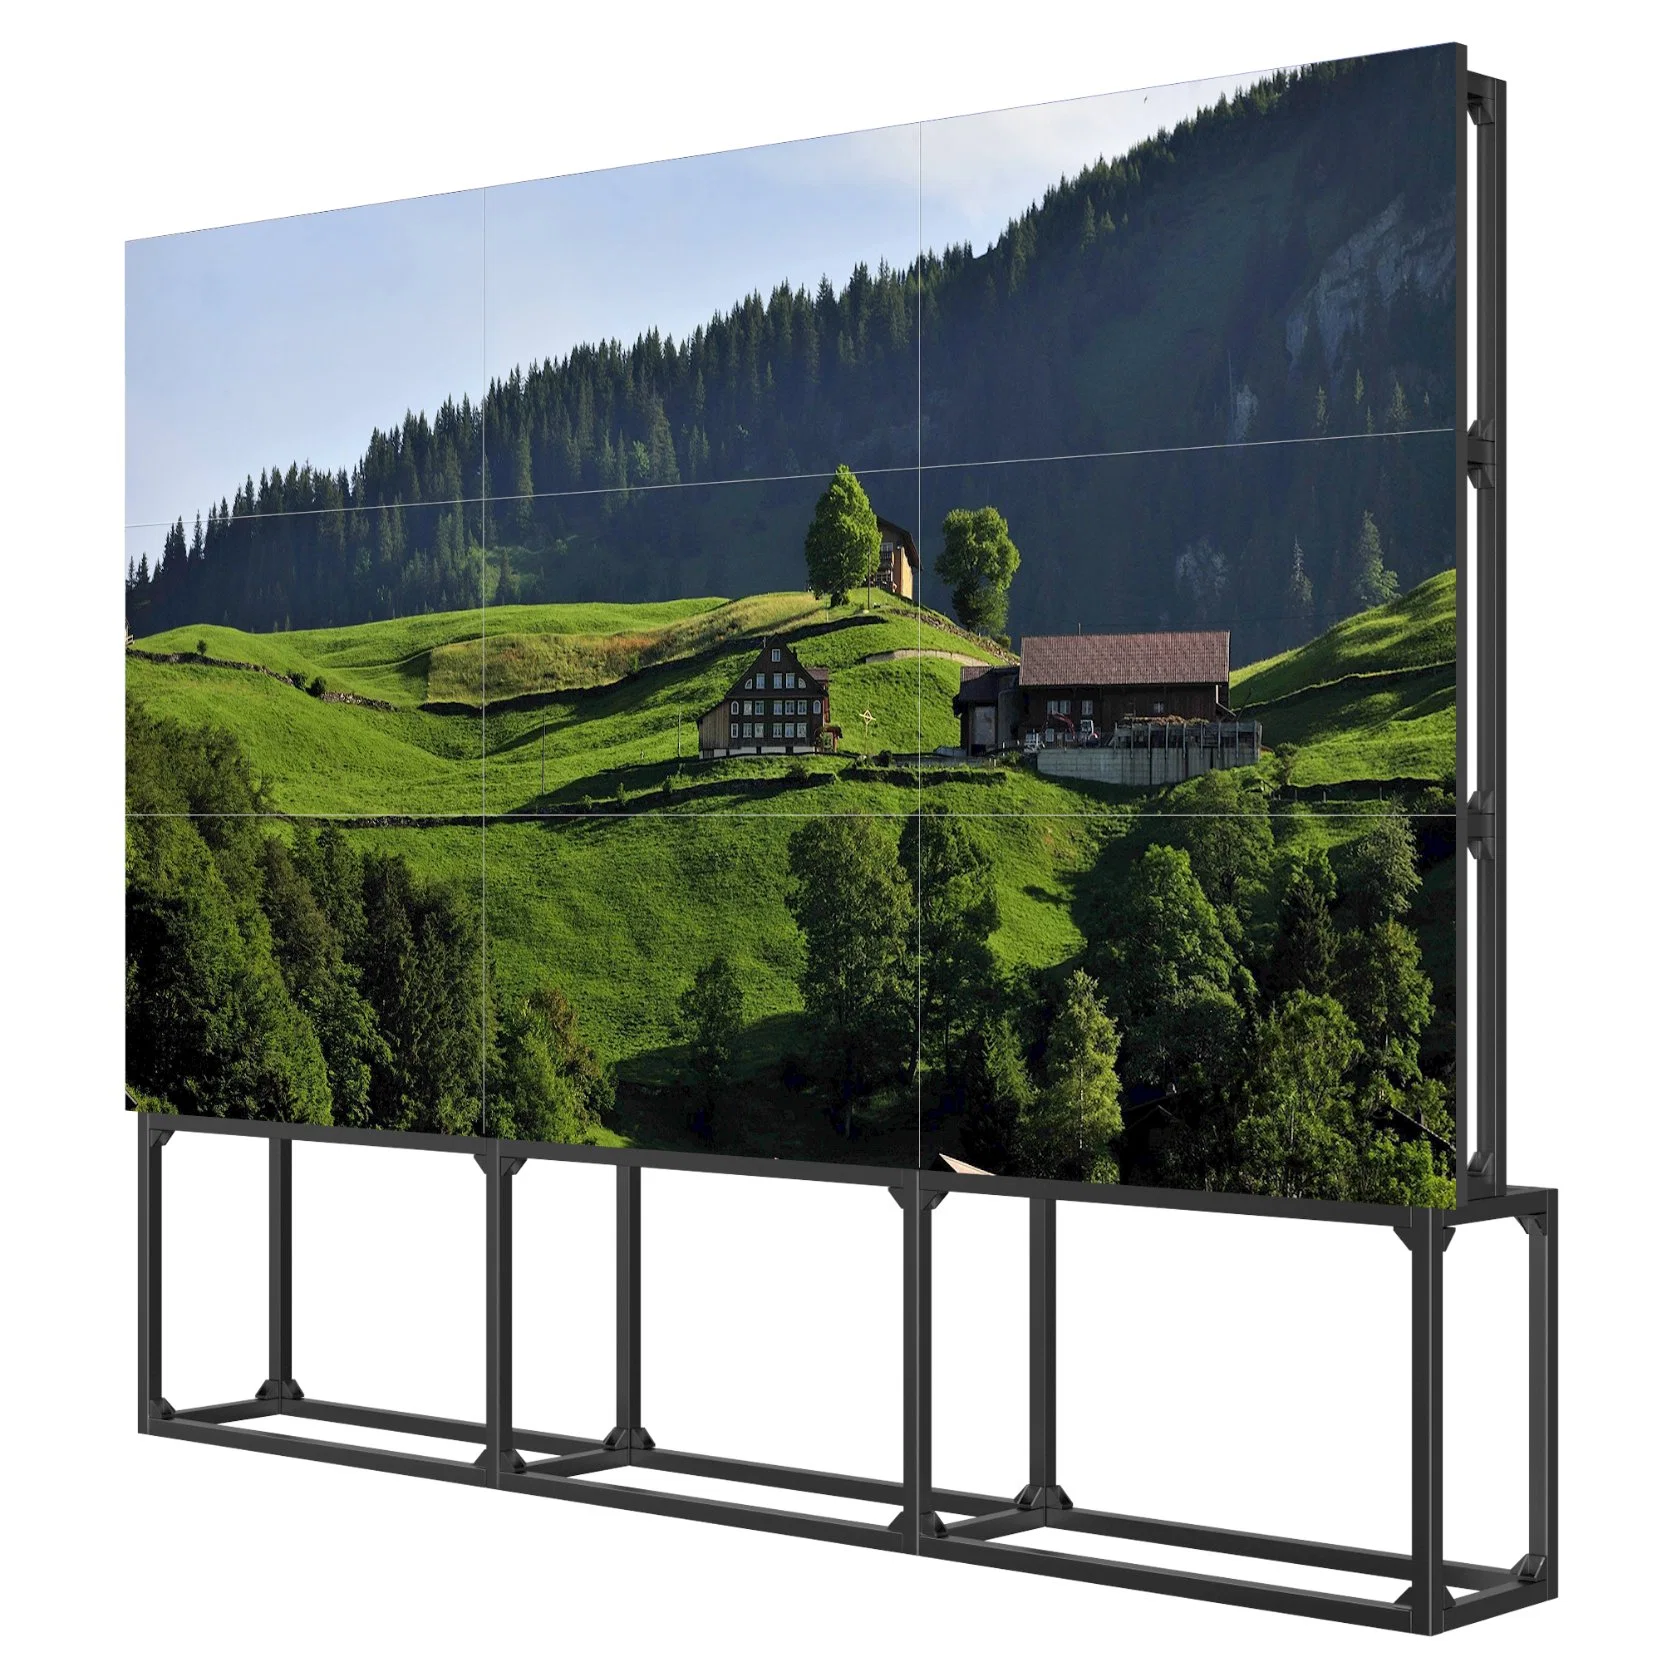 3X3 importés original mur vidéo 46pouces LCD avec contrôleur rack de montage mural 4K Mur vidéo téléviseur LED